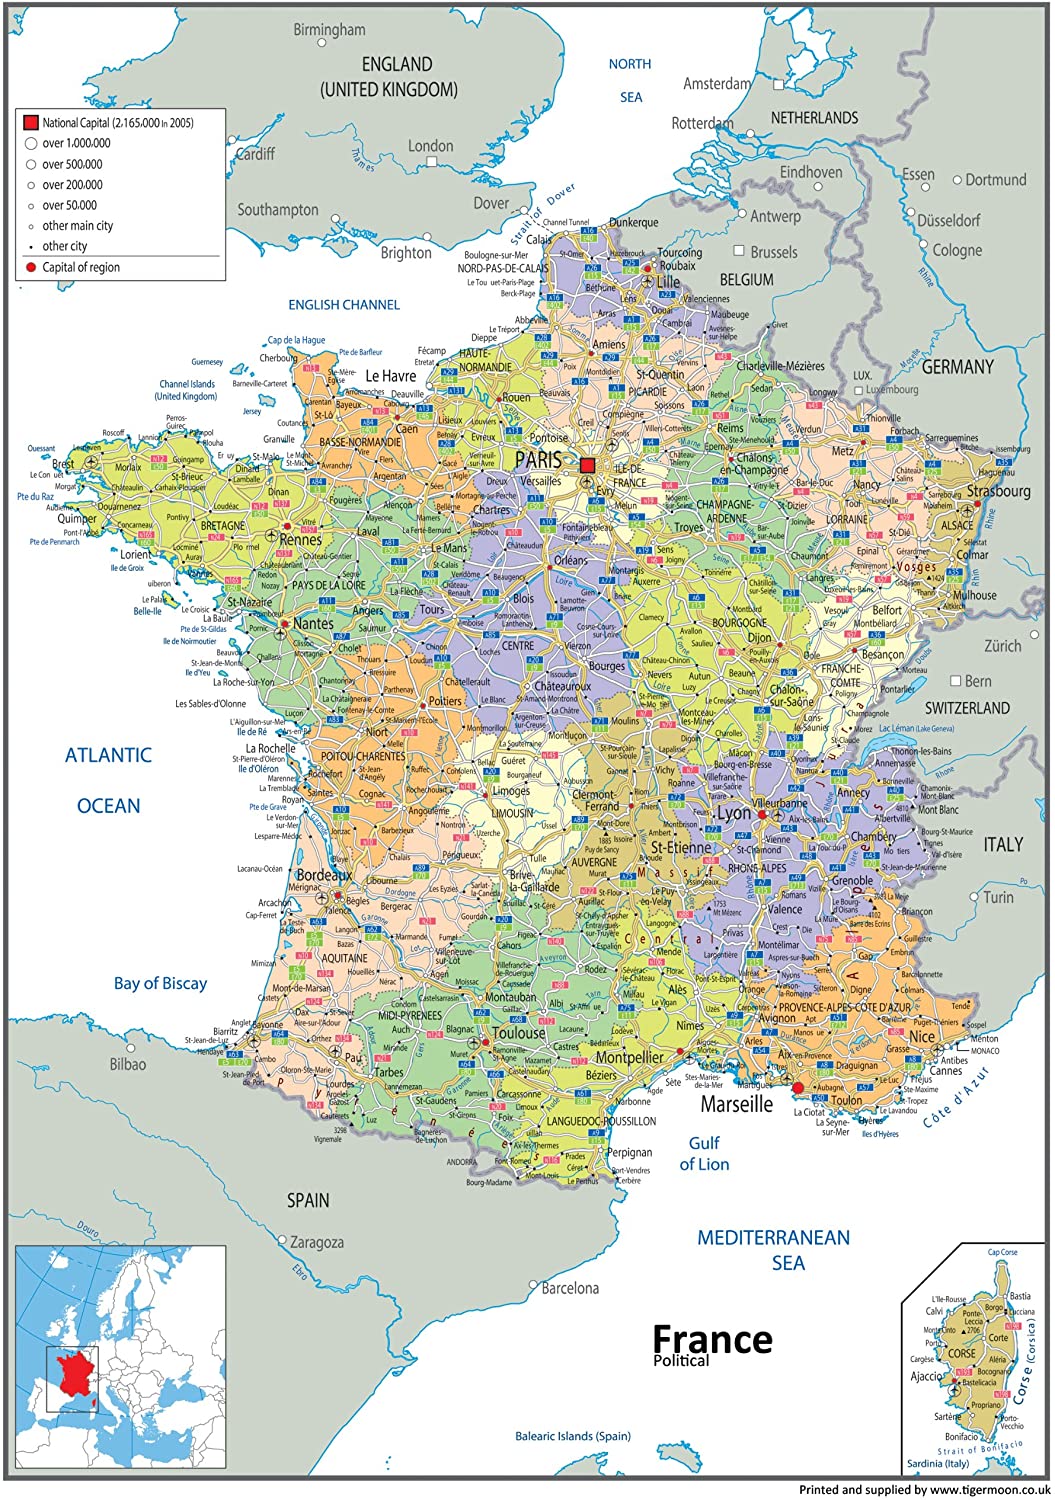 Carte géopolitique de France - Papier plastifié - A0 Taille 84,1 x 118,9 cm 